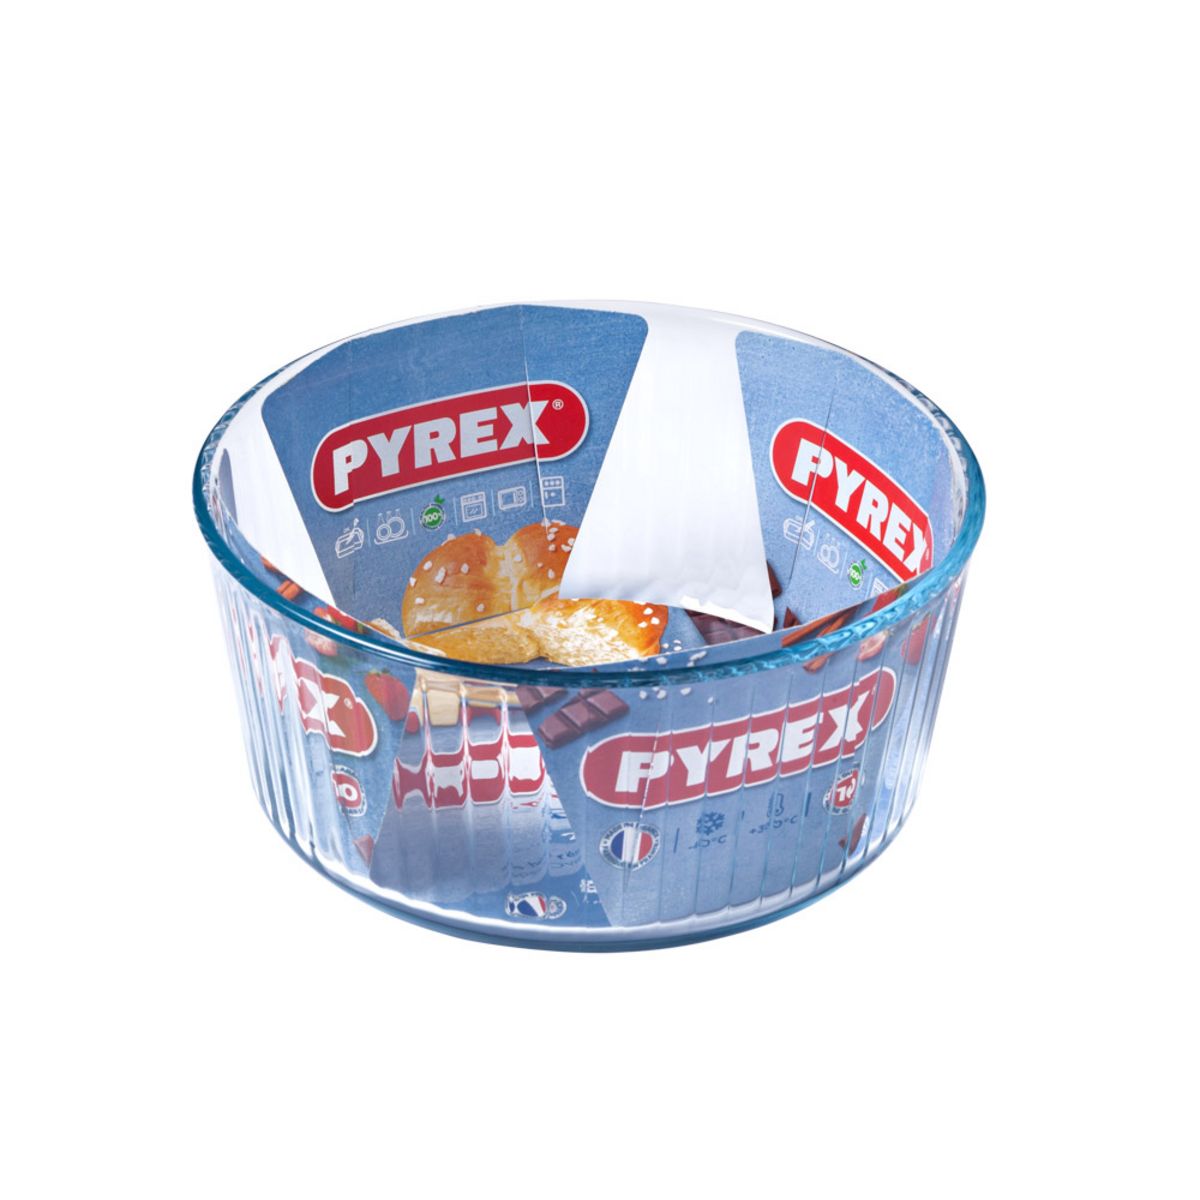 PYREX Moule à soufflé verre 21 cm Pyrex Bake & Enjoy